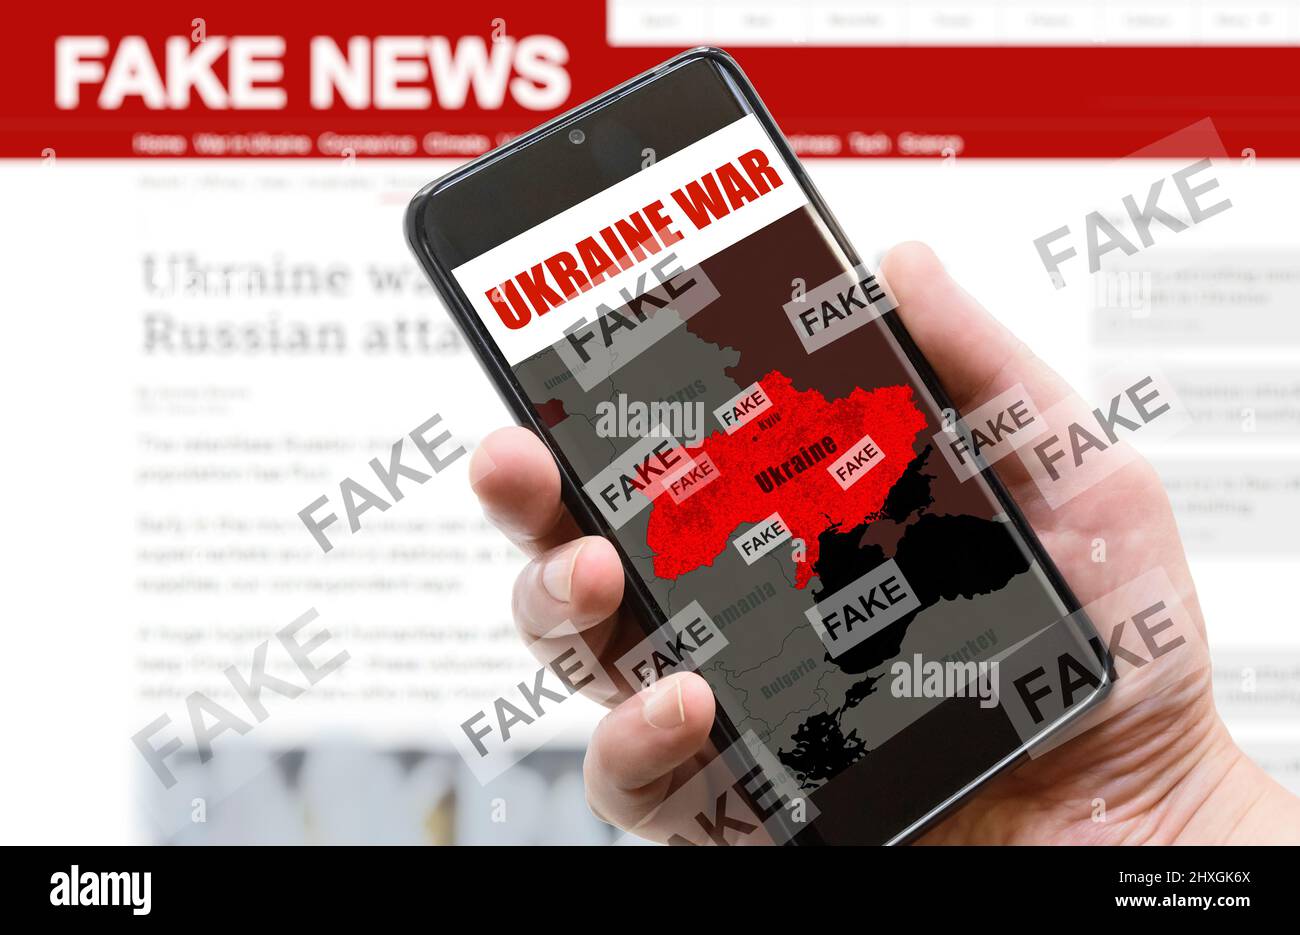 Guerra in Ucraina e Fake News tema, Russia e Ucraina conflitto sullo schermo del telefono cellulare. Russia vs Ucraina nei media. Concetto di politica, comunicazione Foto Stock